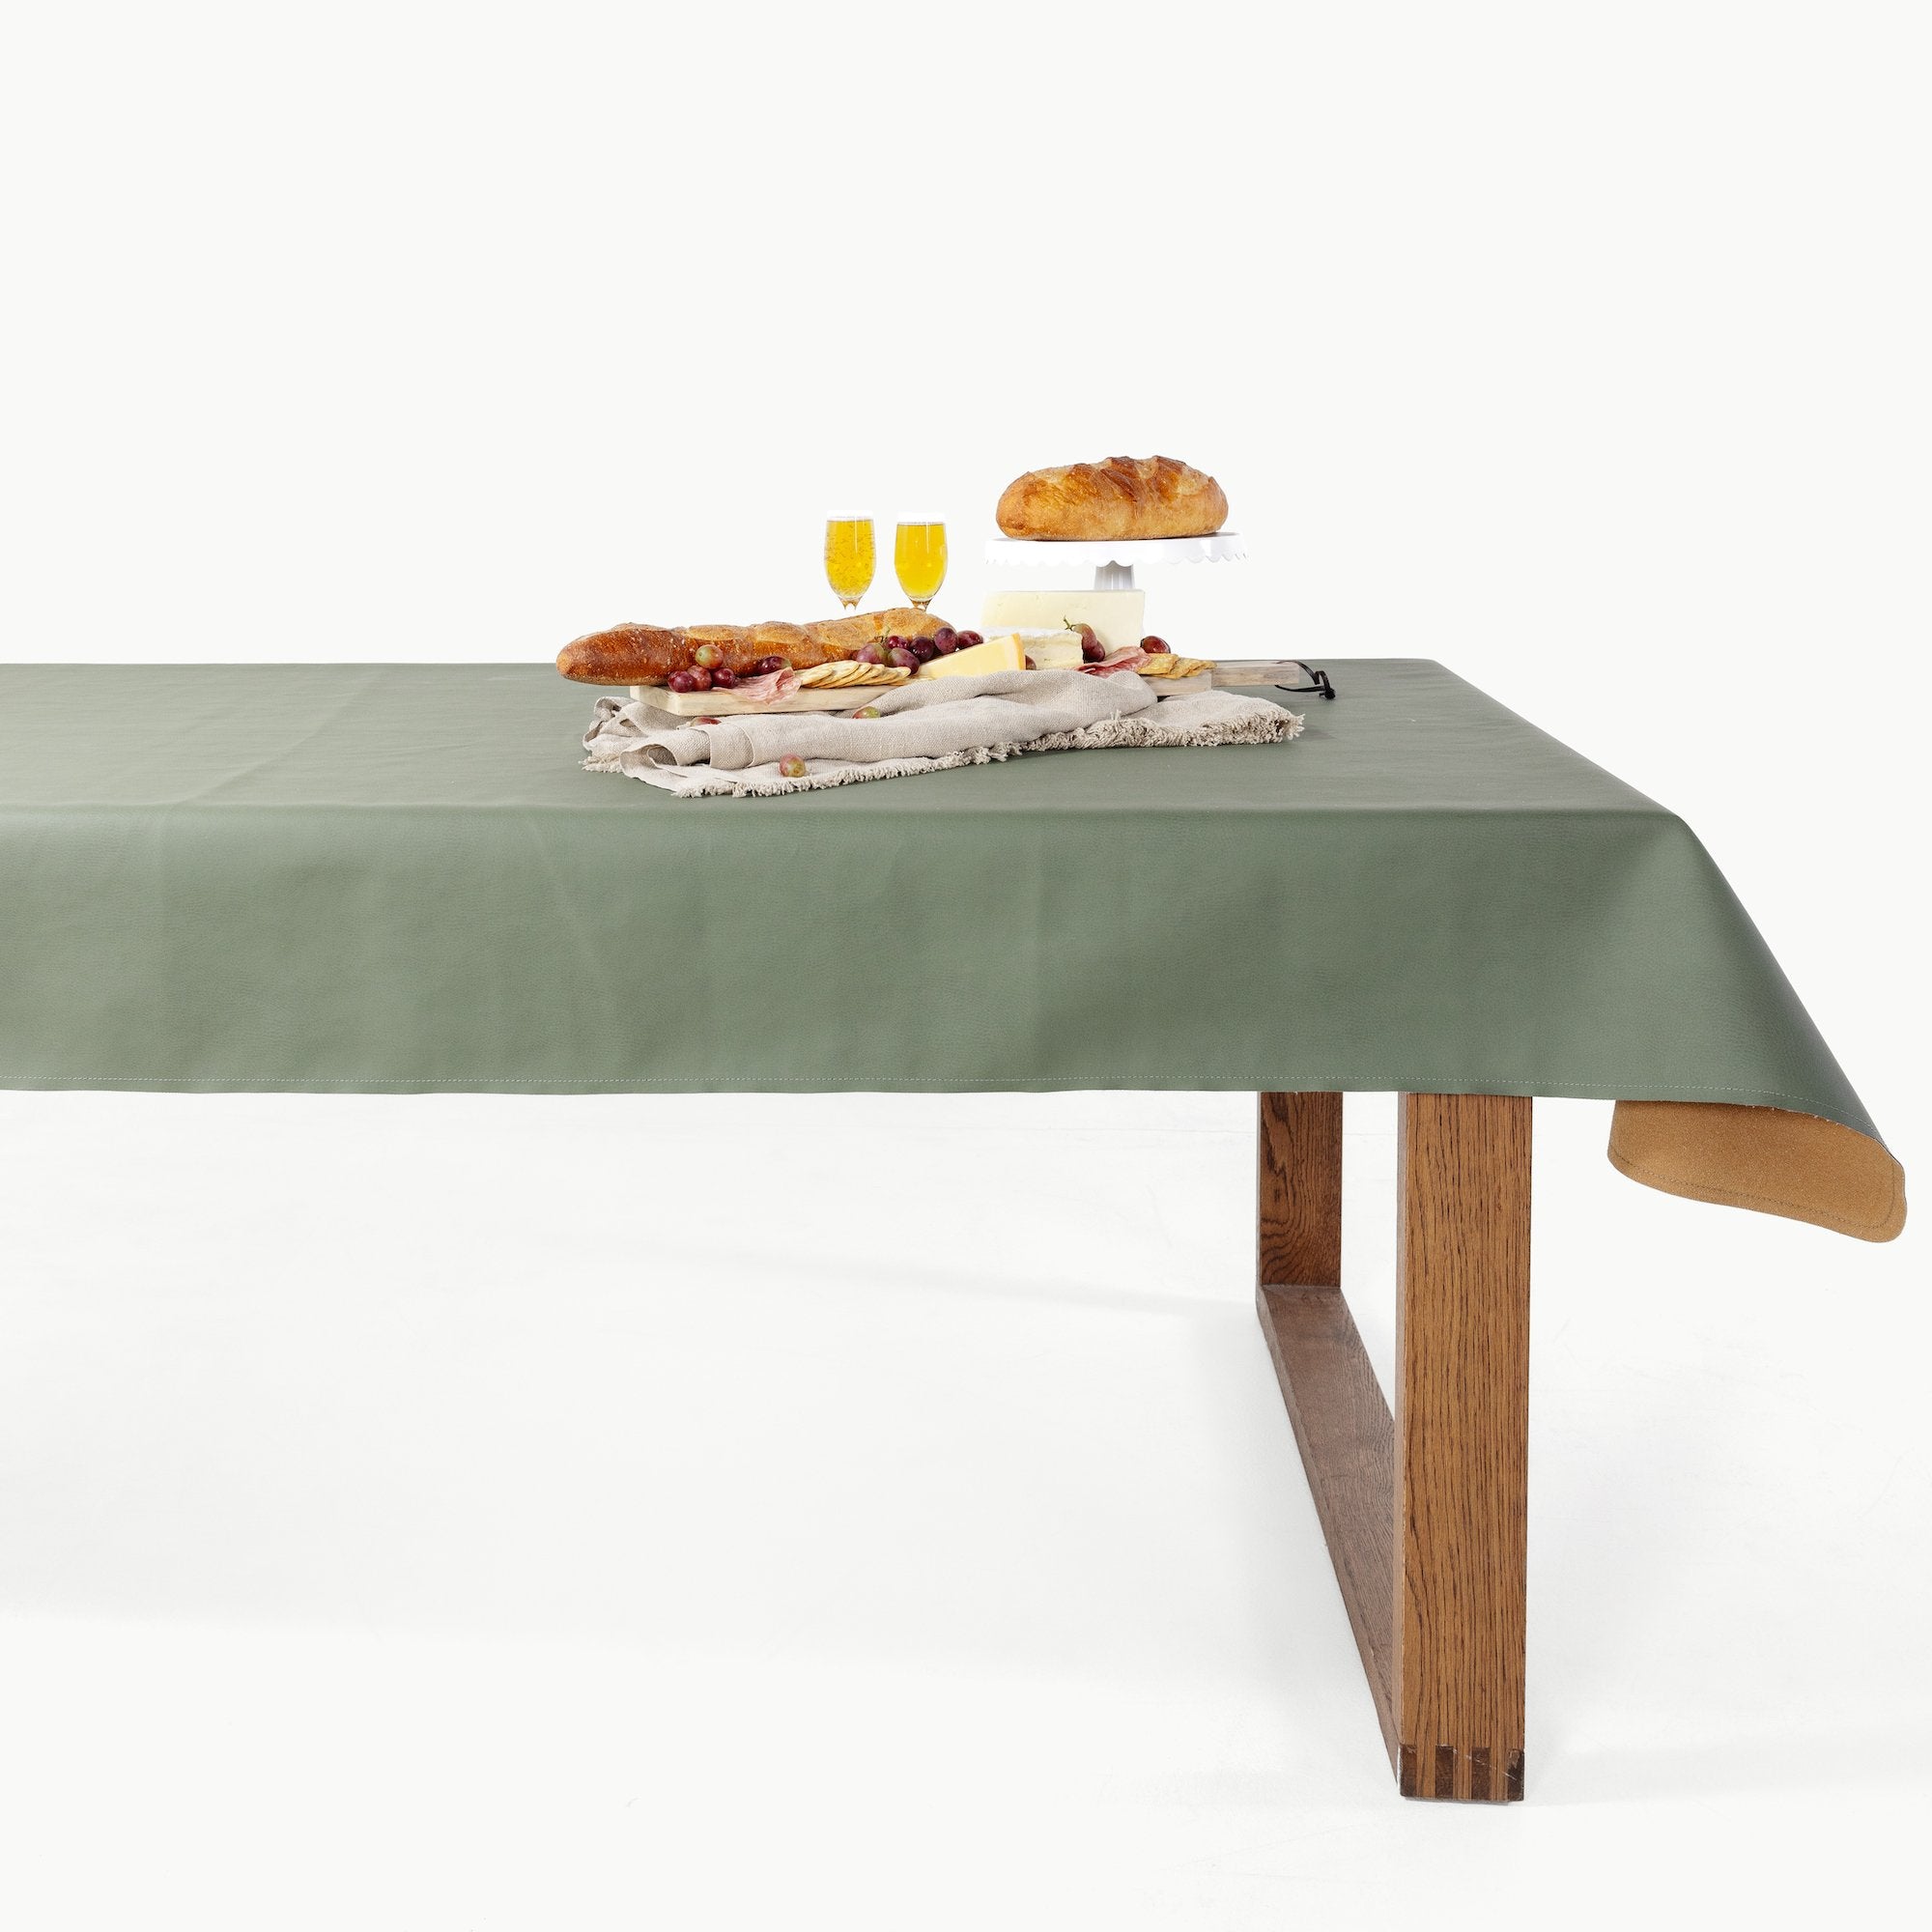 Thyme • Fog (on sale) / 6 Foot@Thyme/Fog Tablecloth on a table